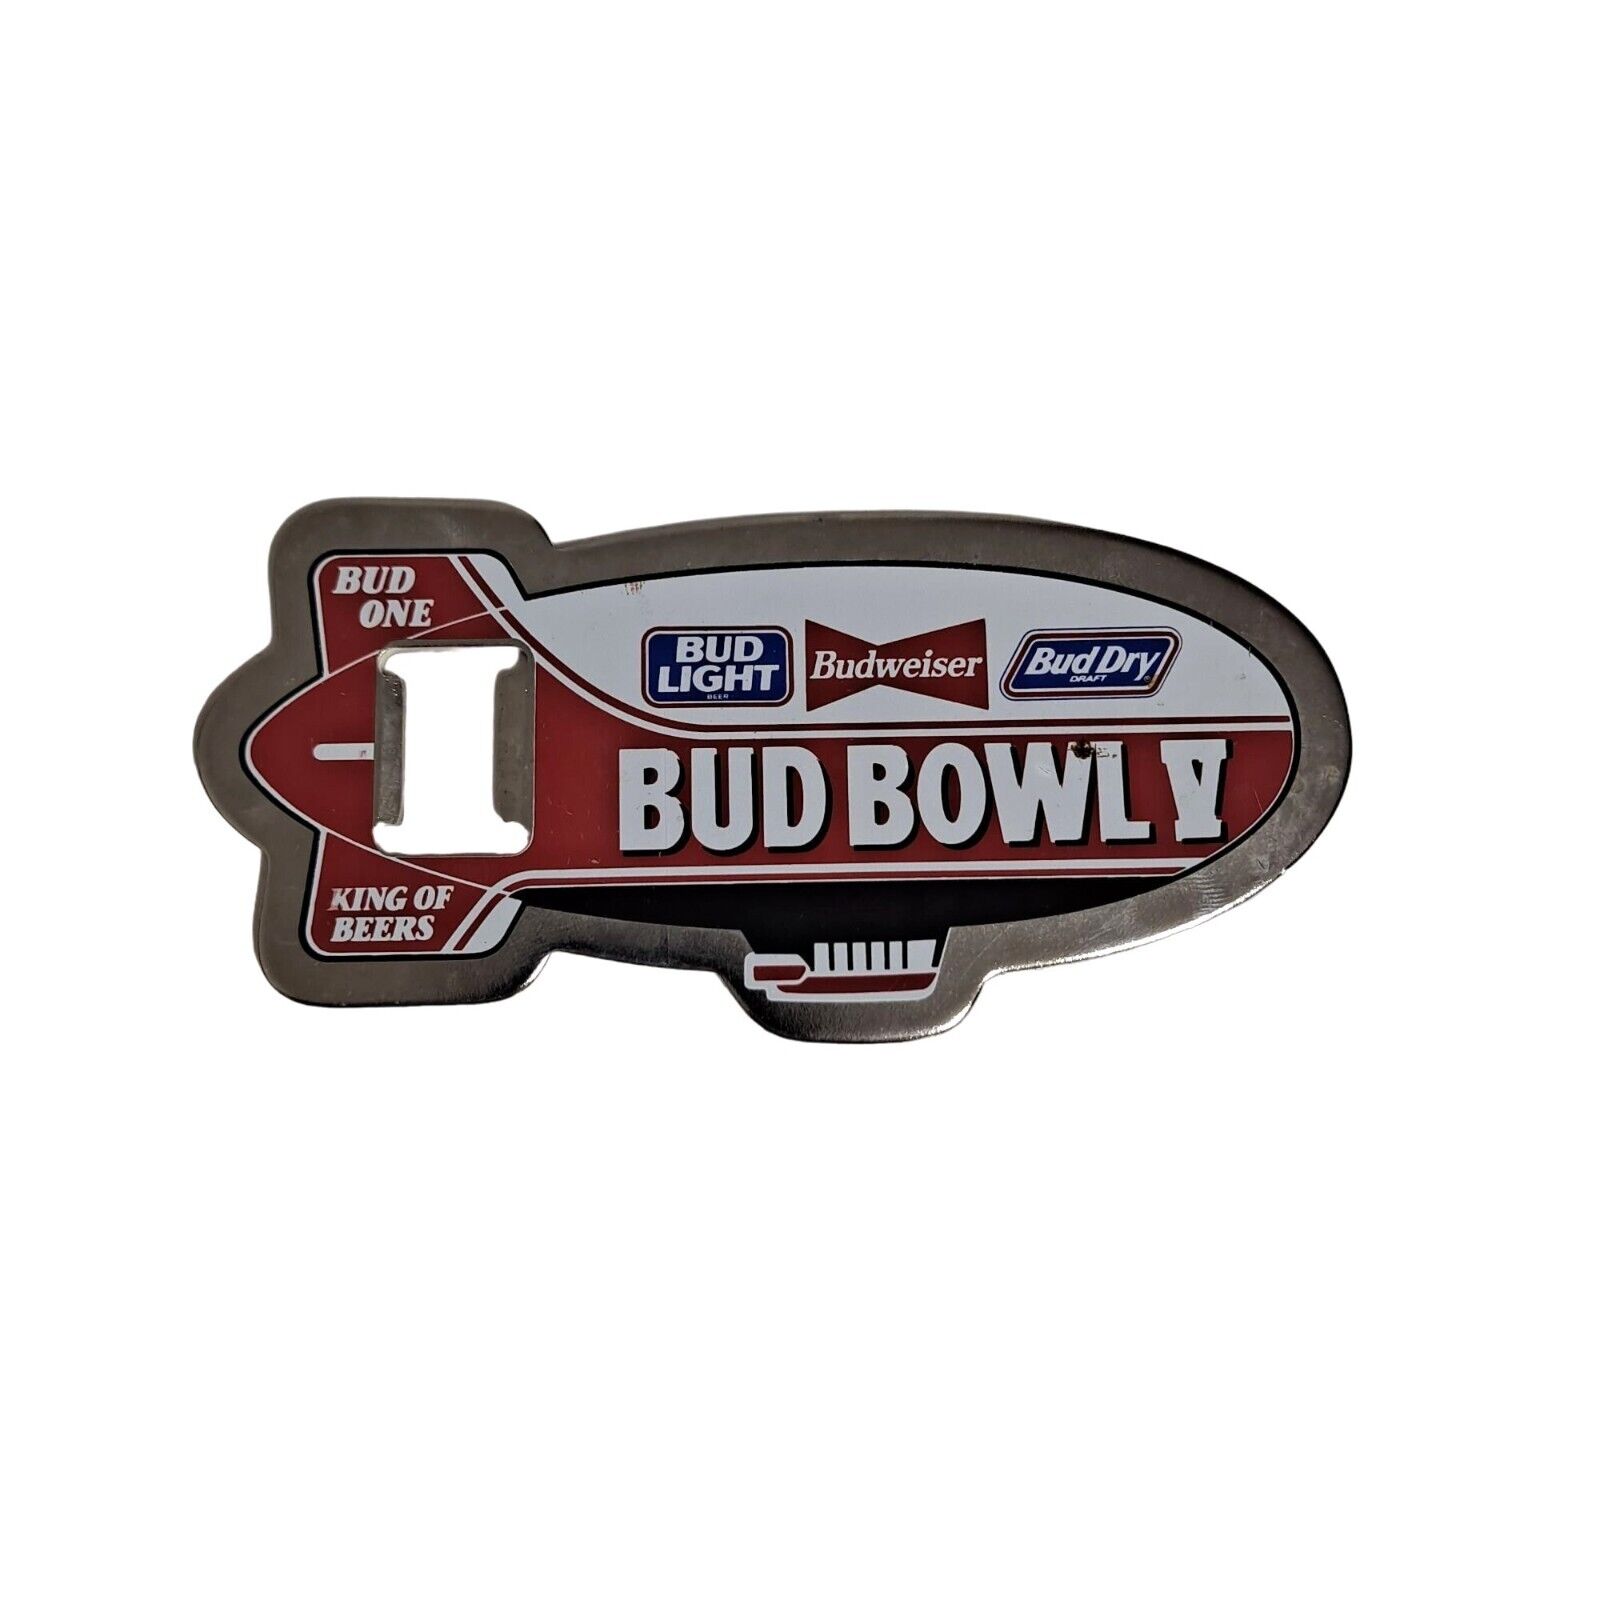 Vintage Budweiser Bottle Opener Bud Bowl V Zeppelin Super Bowl Collectible Bar